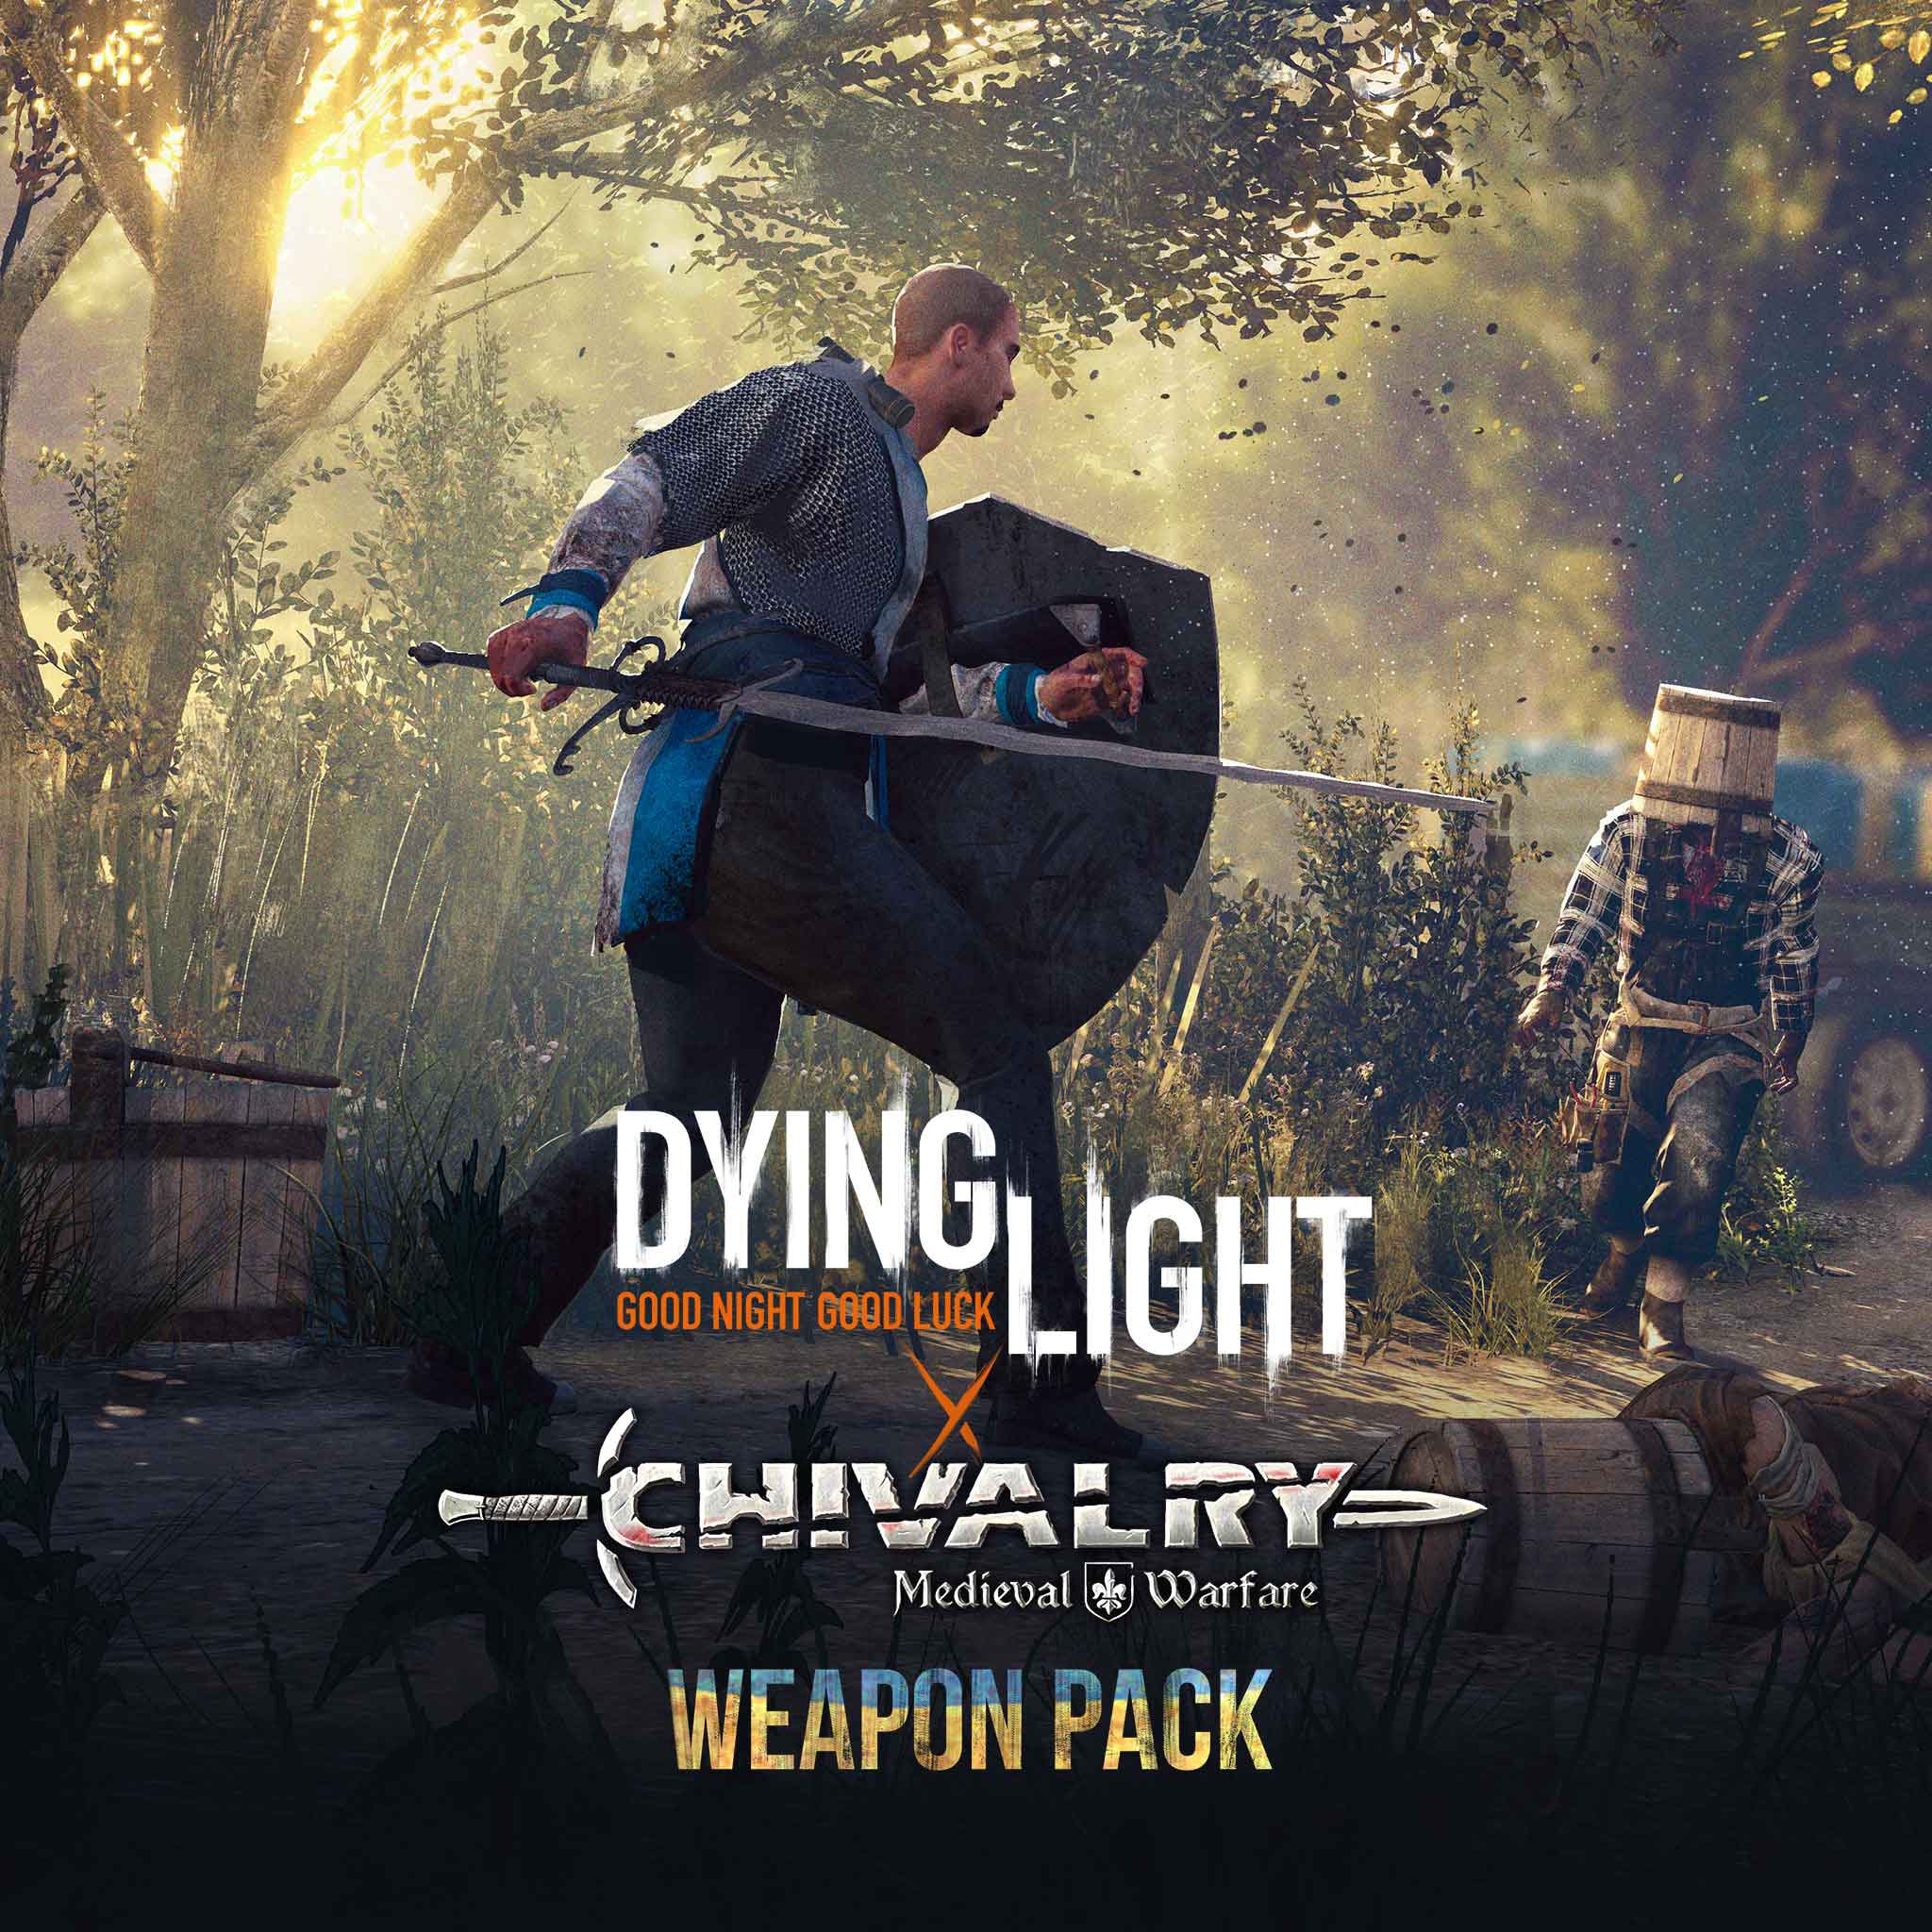 dying light weapons seem weak